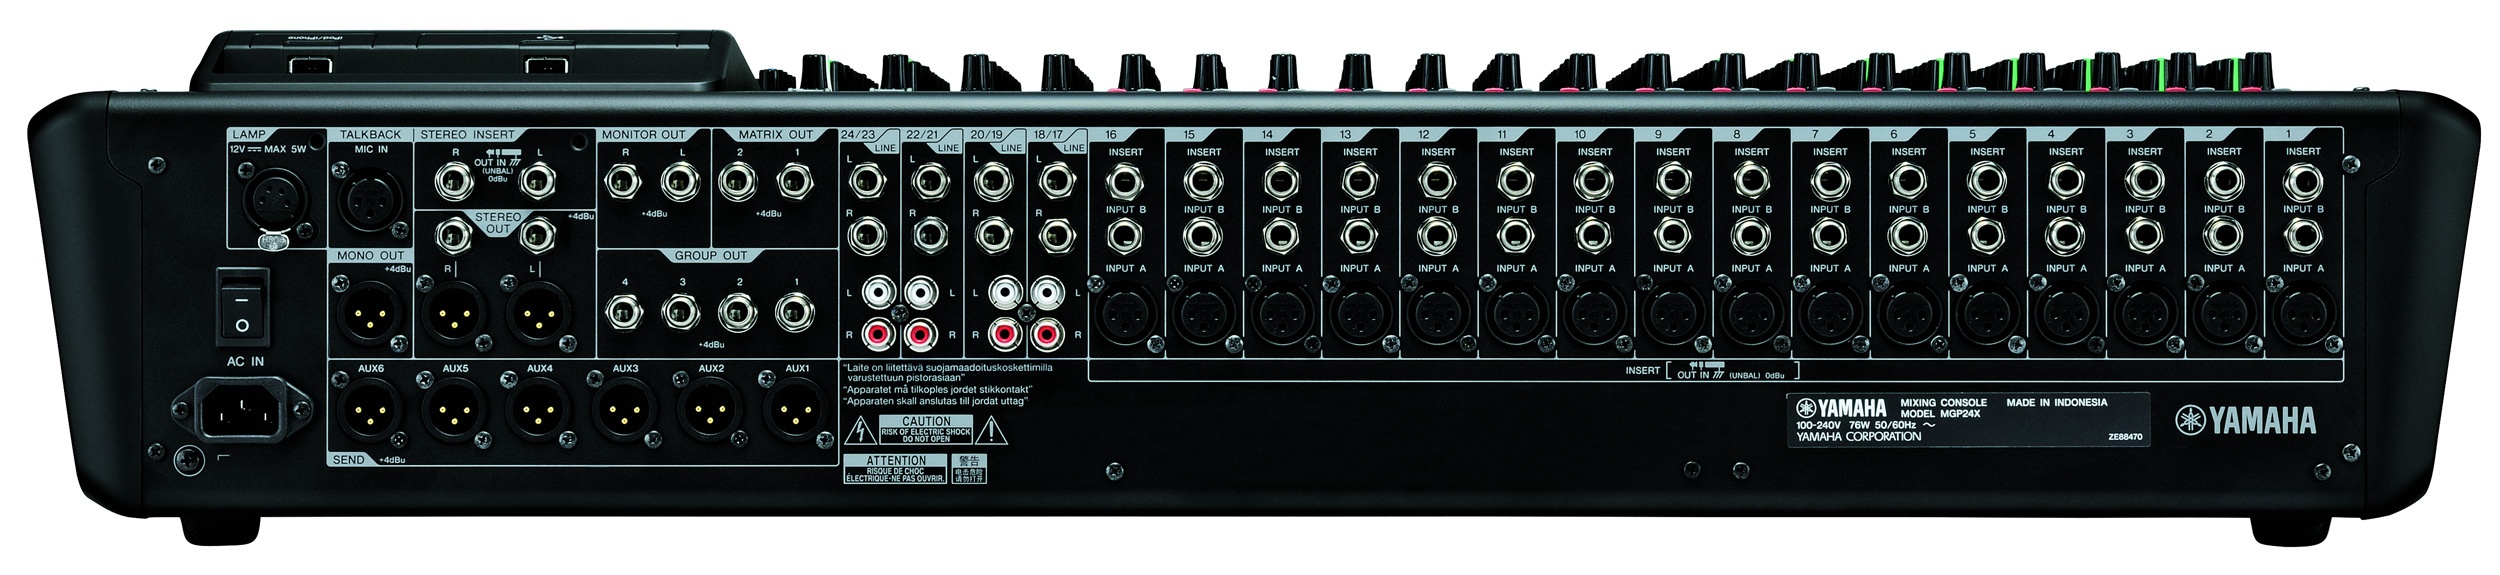 Yamaha MGP24X Consola de Mezcla Premium de 24 canales